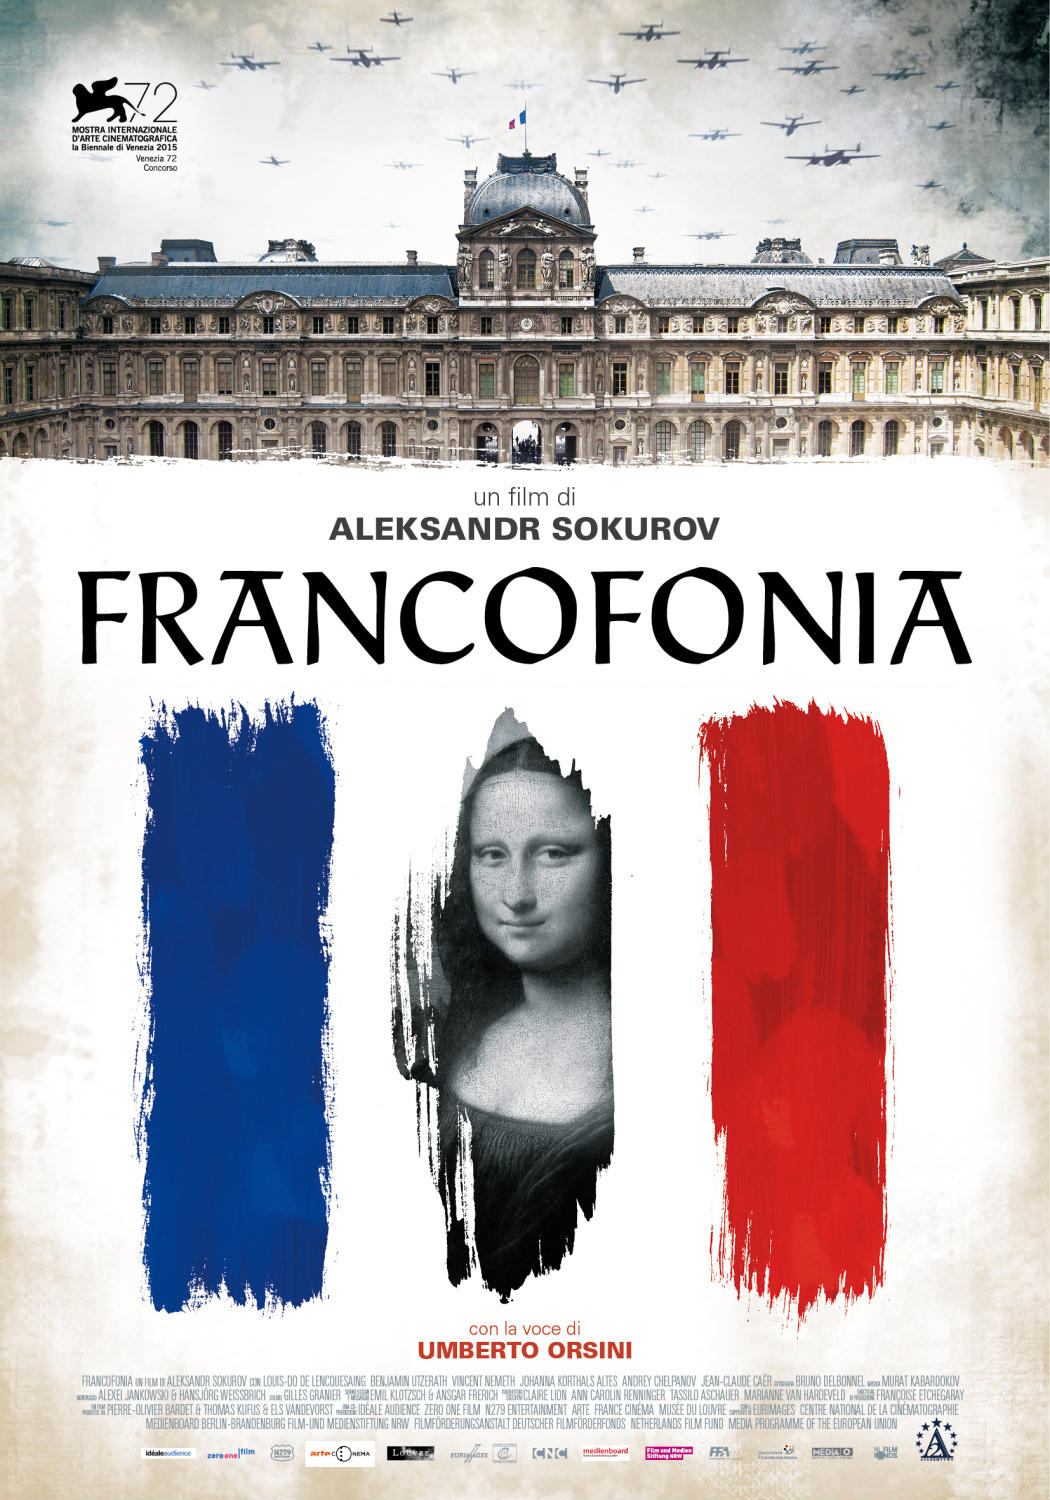  Francofonia Film 2015 